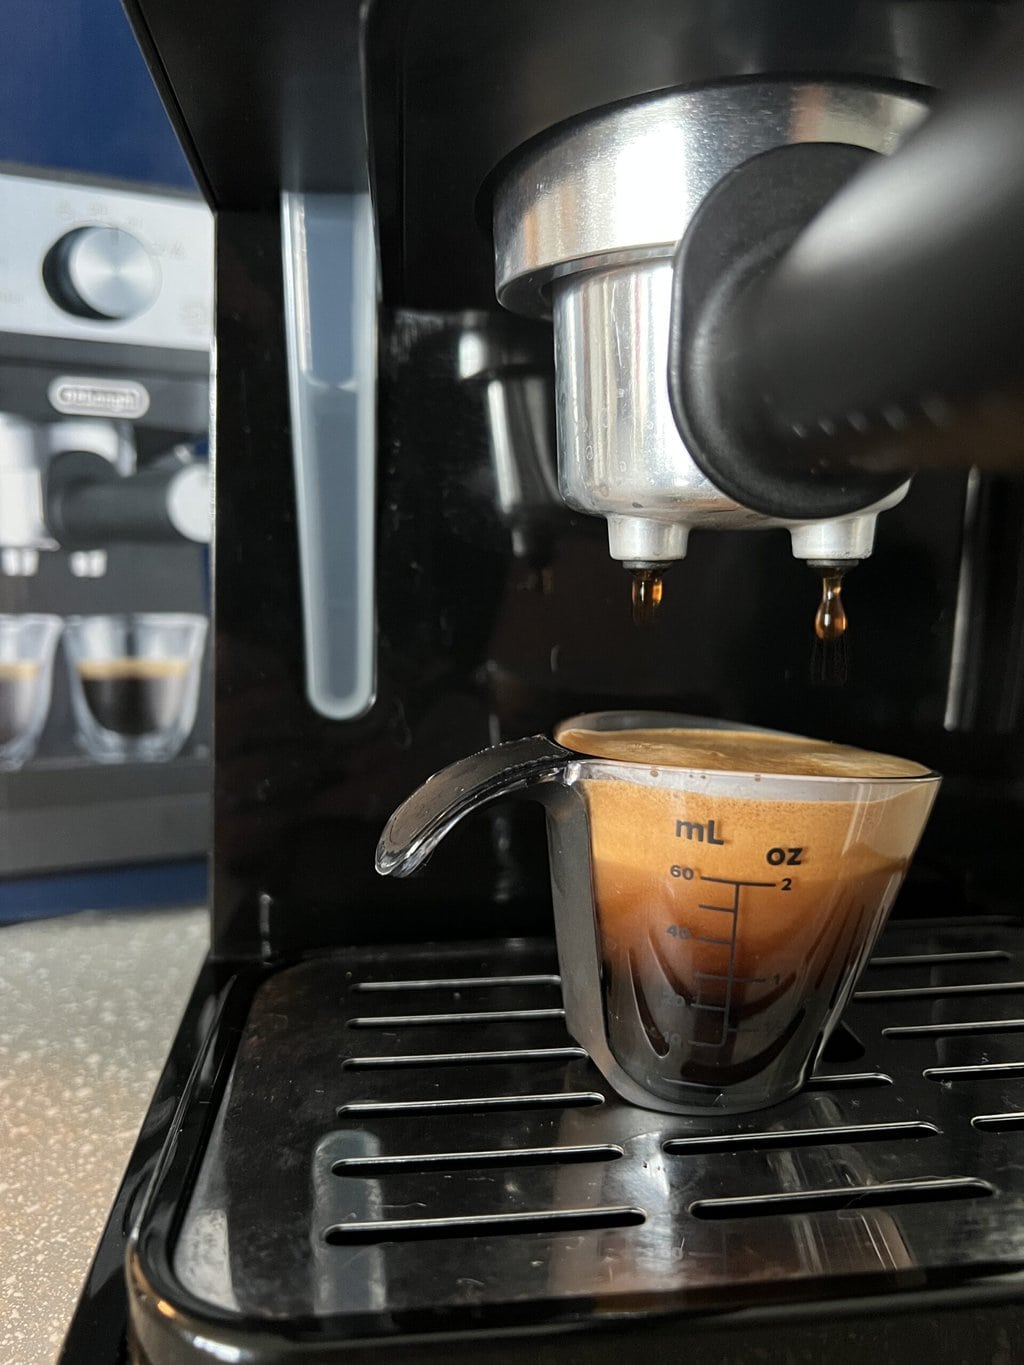 Una máquina de café espresso compacta y asequible